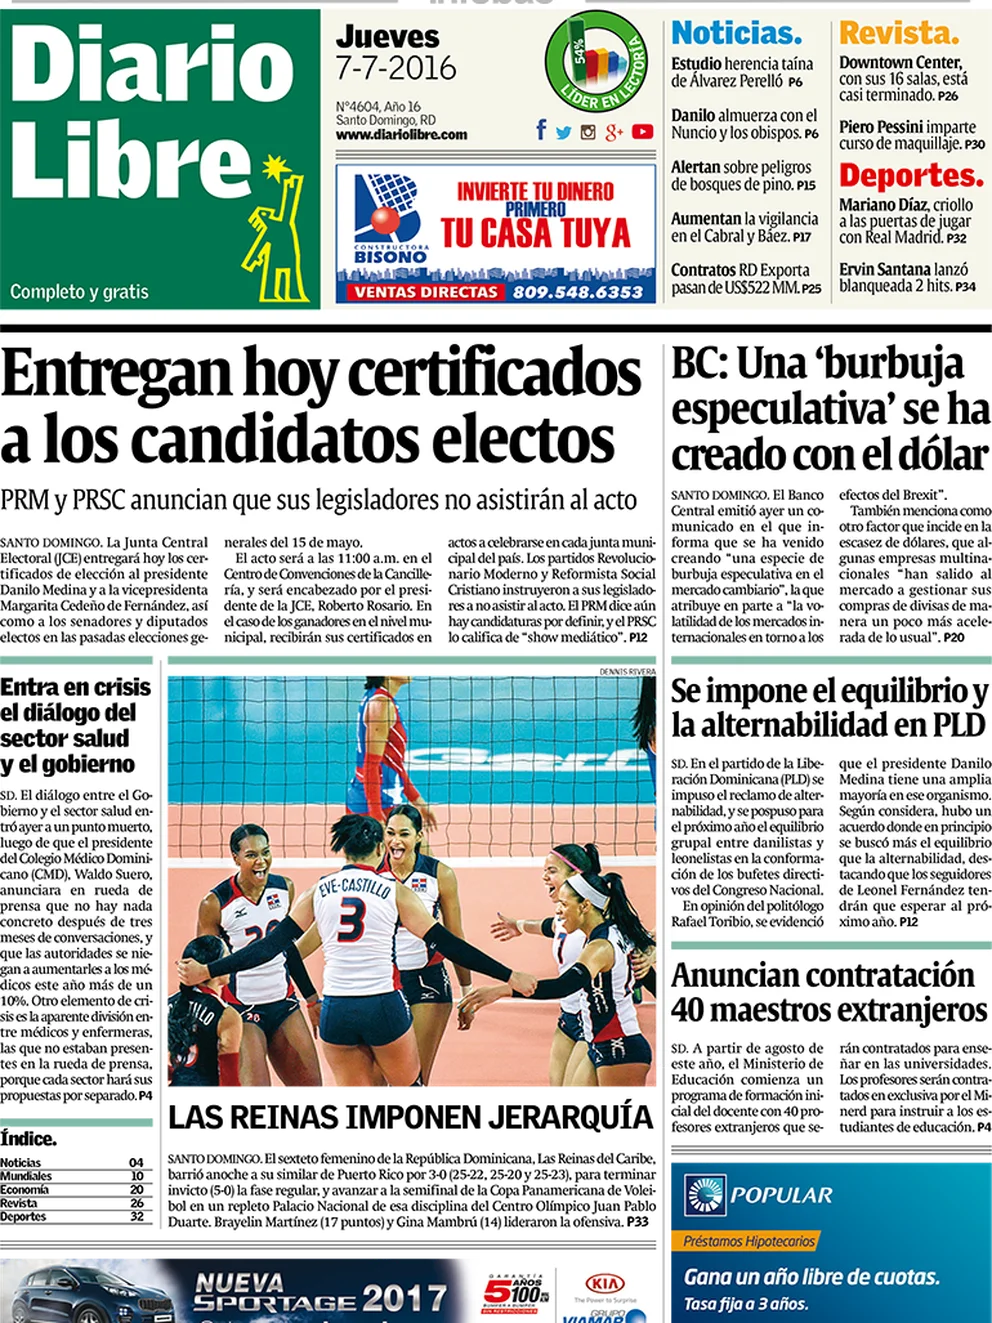 Diario Libre República Dominicana Jueves 7 De Julio De 2016 Infobae 